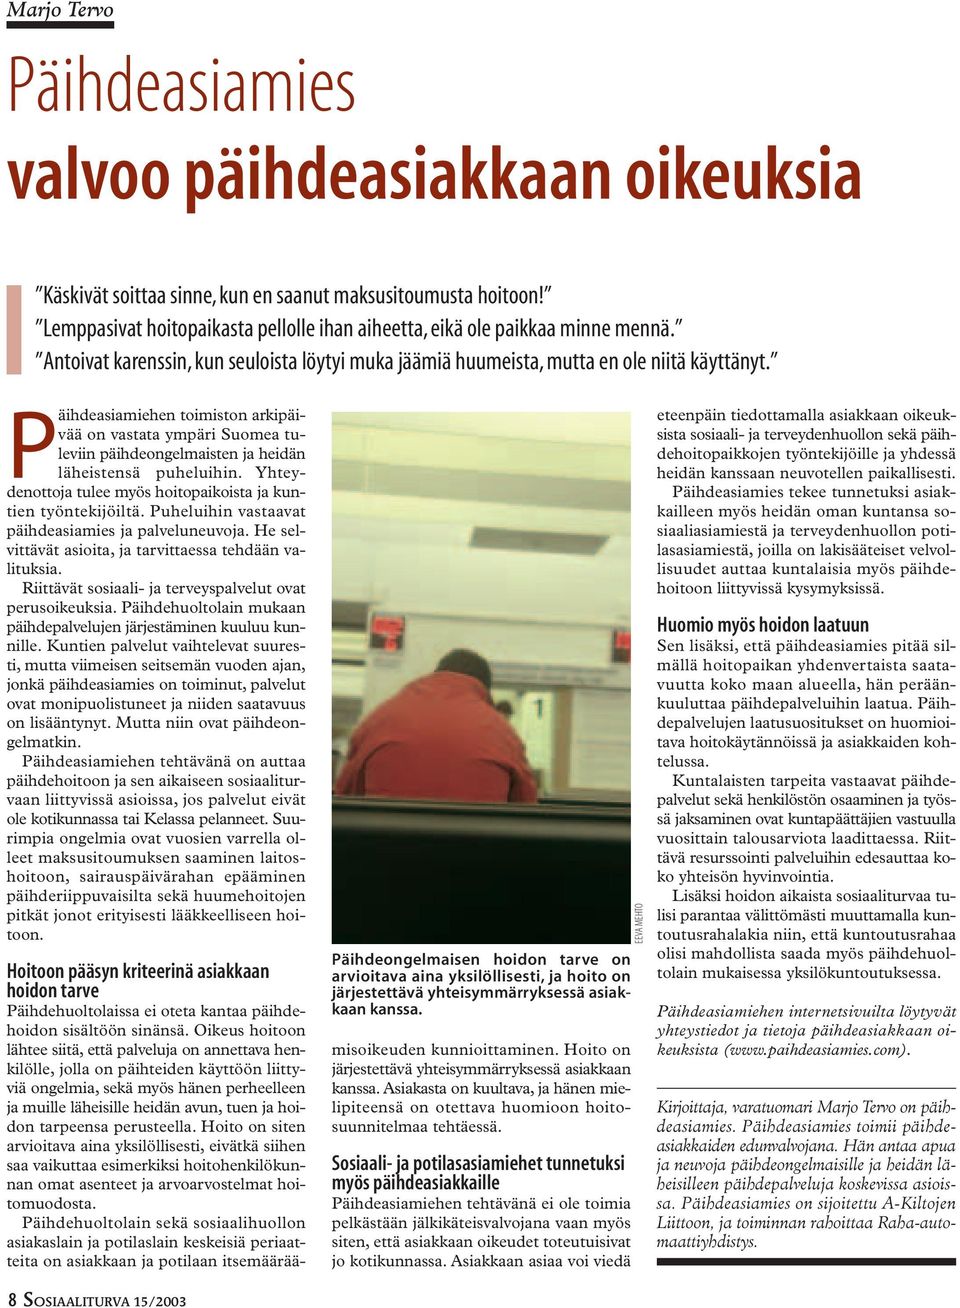 Päihdeasiamiehen toimiston arkipäivää on vastata ympäri Suomea tuleviin päihdeongelmaisten ja heidän läheistensä puheluihin. Yhteydenottoja tulee myös hoitopaikoista ja kuntien työntekijöiltä.